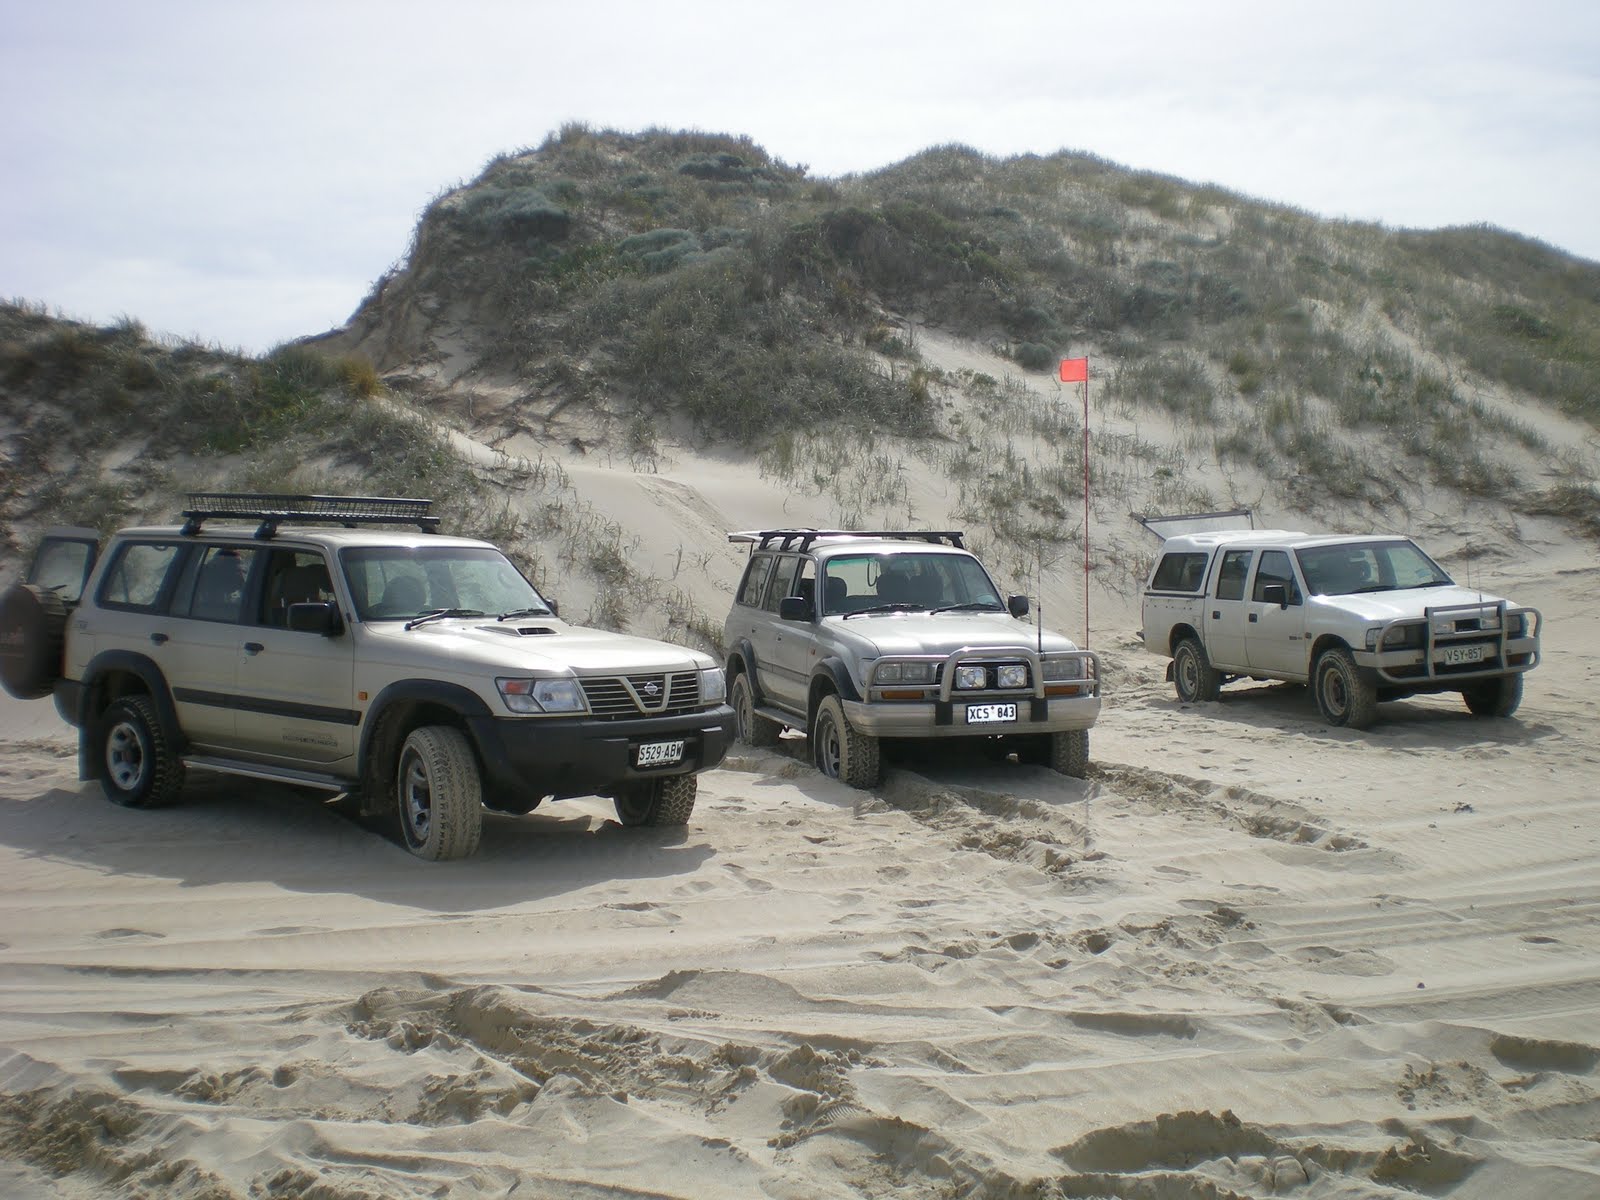 http://1.bp.blogspot.com/_YVG80zZR05U/SwS1kiAIf1I/AAAAAAAAAWc/r8eLrNzUgYA/s1600/trucks+gunyah+beach.jpg